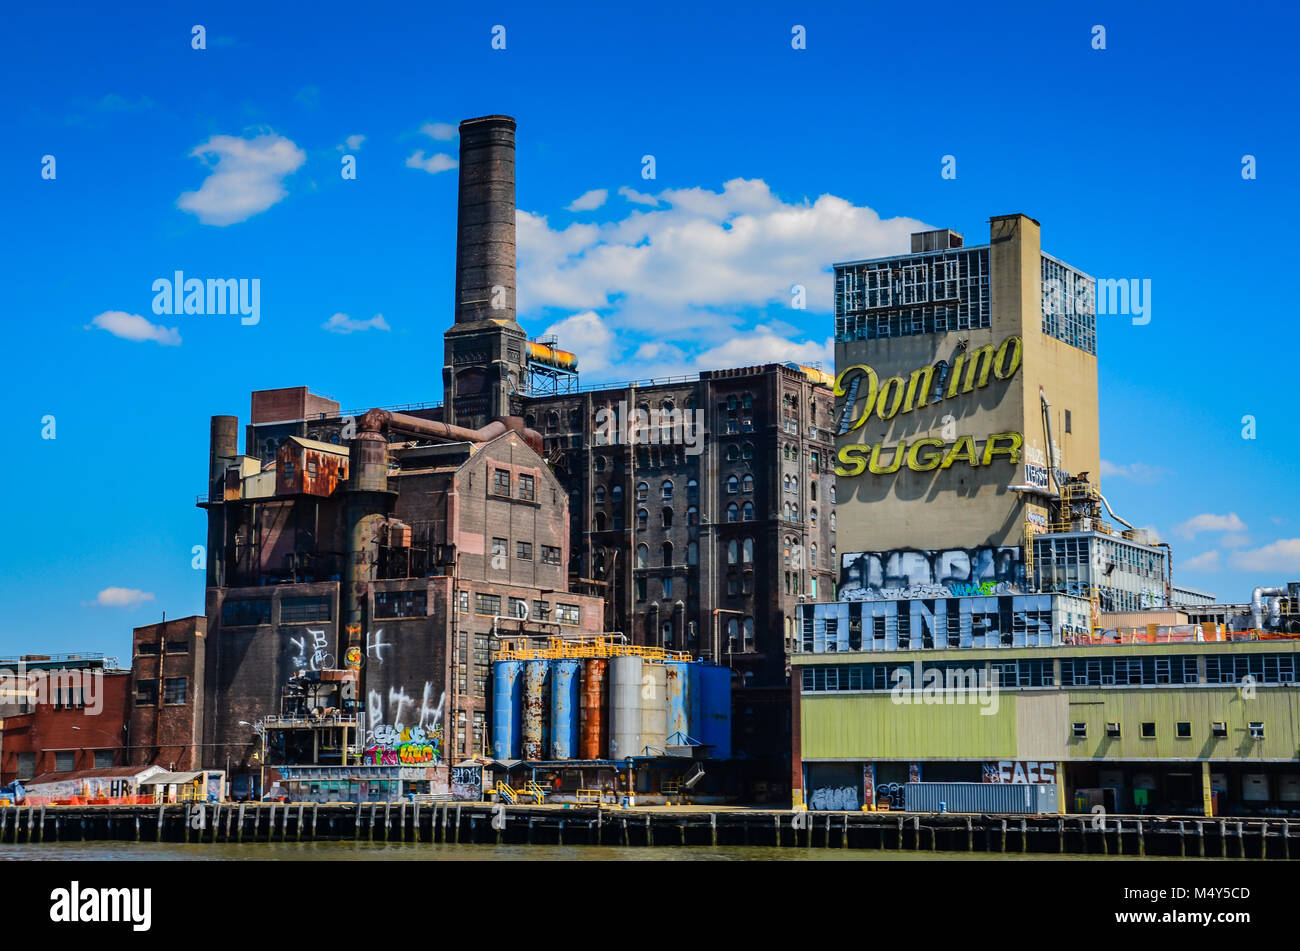 Il Domino raffineria di zucchero è un ex raffineria nel quartiere di Williamsburg a Brooklyn, New York City. Foto Stock